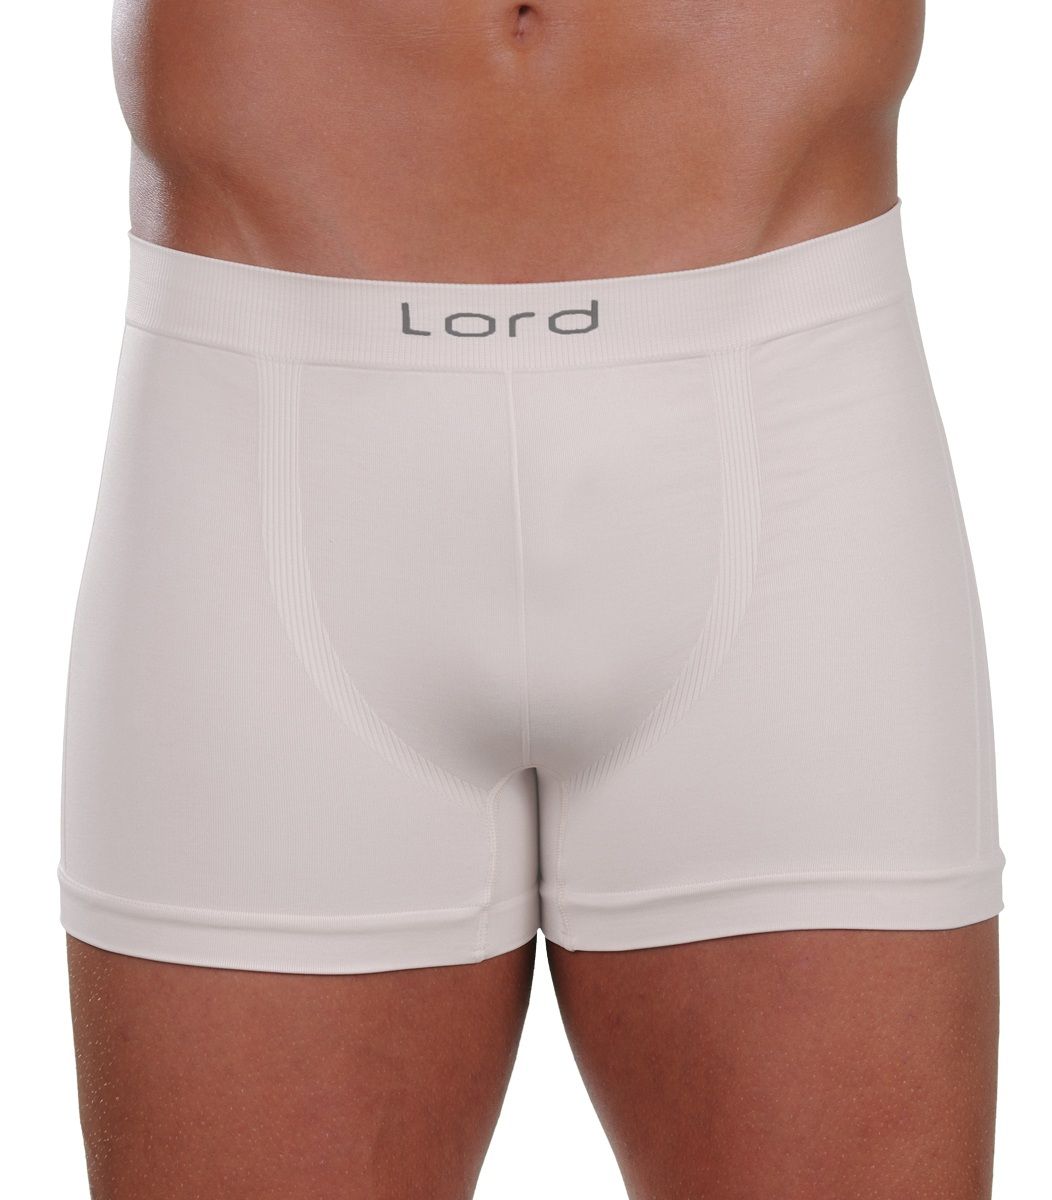 men underwear, boxer, microfibra Color White Size Small & Medium